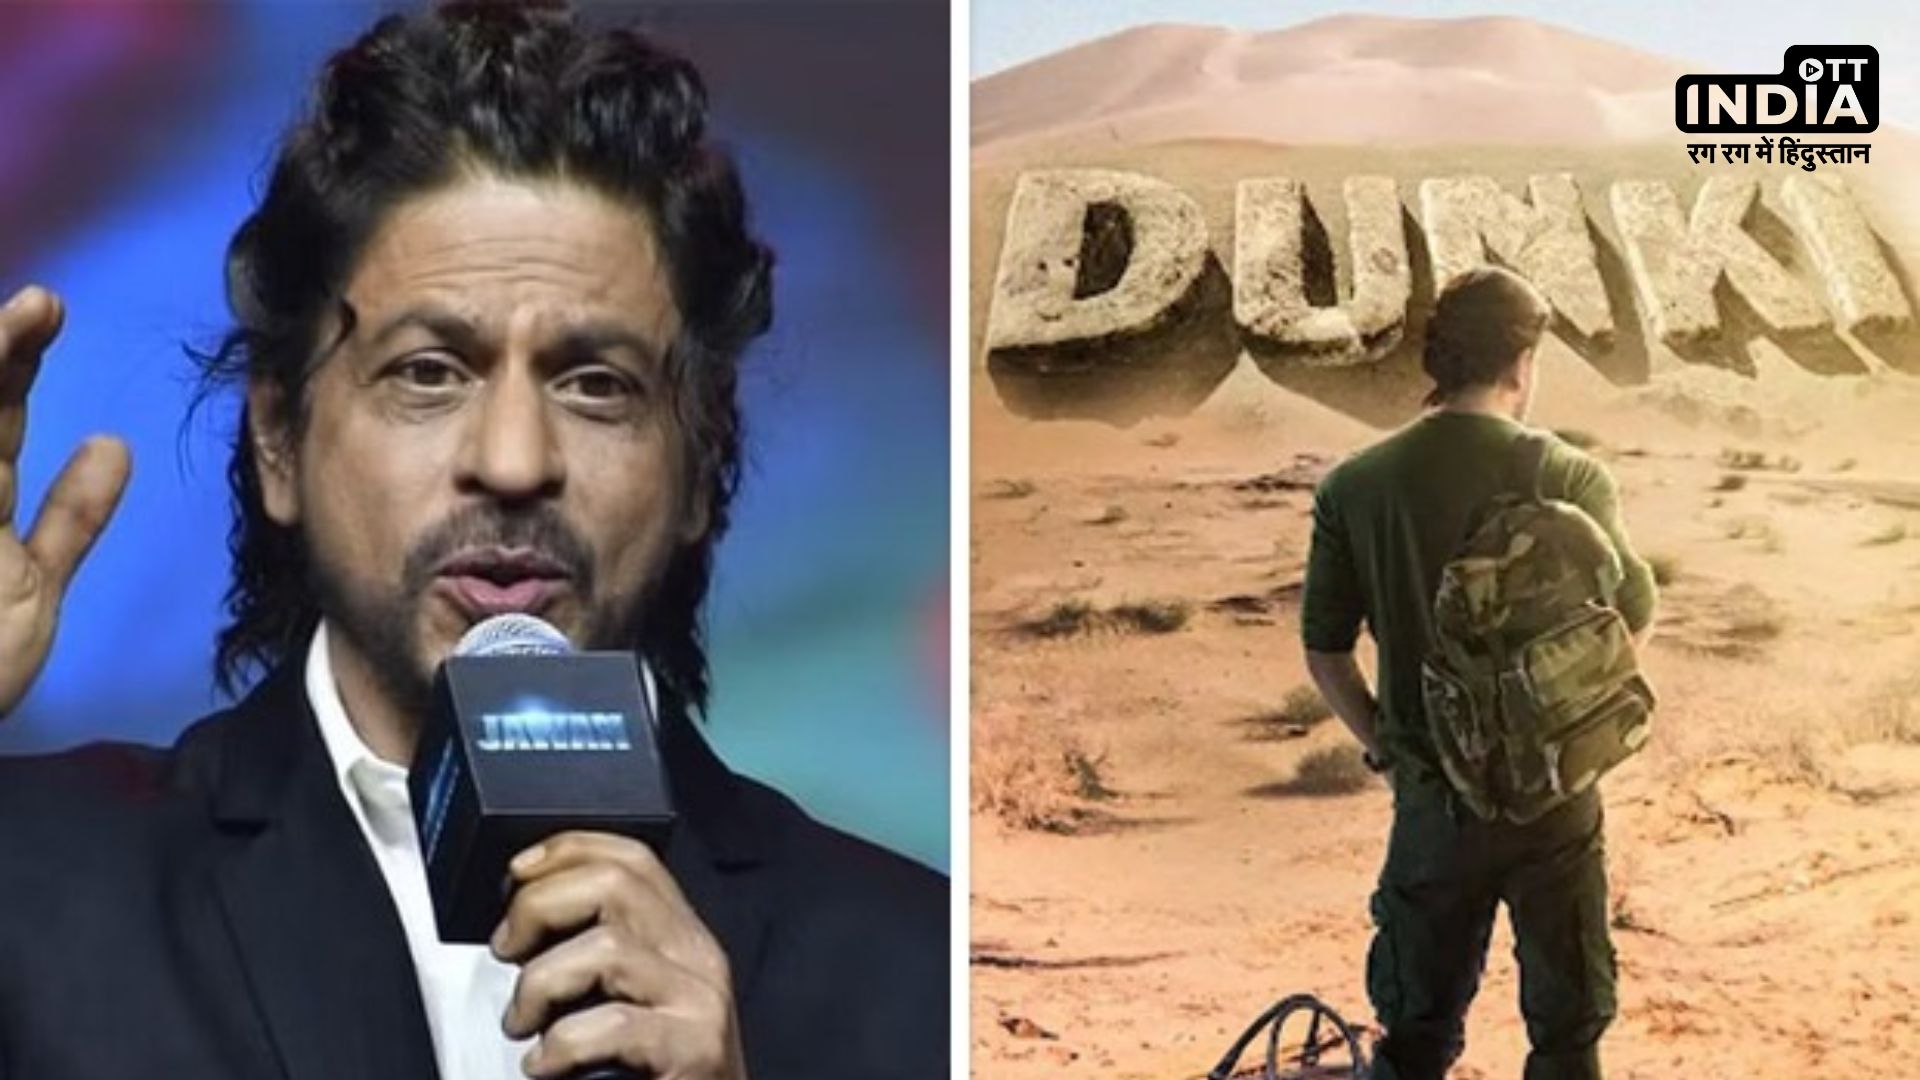 Dunki Teaser : शाहरुख खान अपने जन्मदिन पर फैंस को देंगे ये बड़ा तोहफा, पढ़िए पूरी खबर…